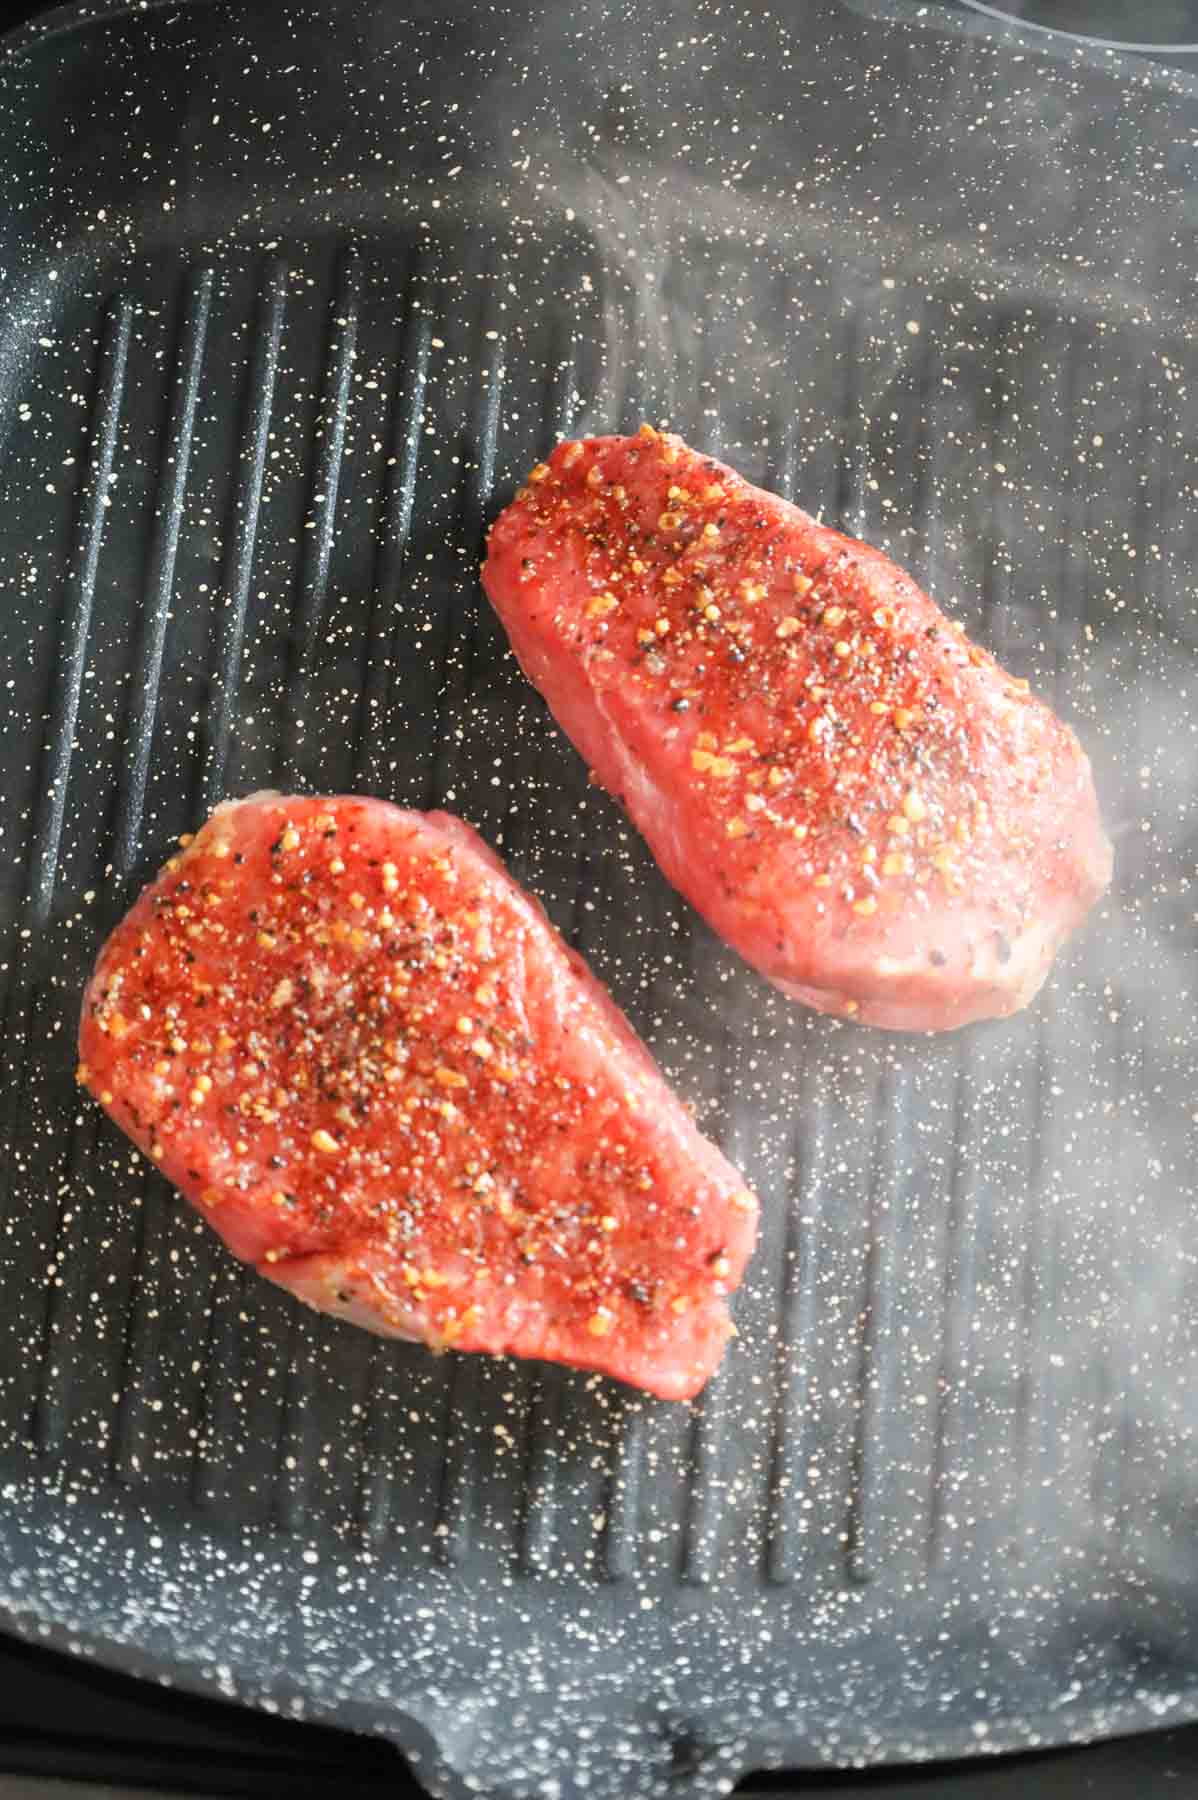 seasoned steaks cooking in a skillet